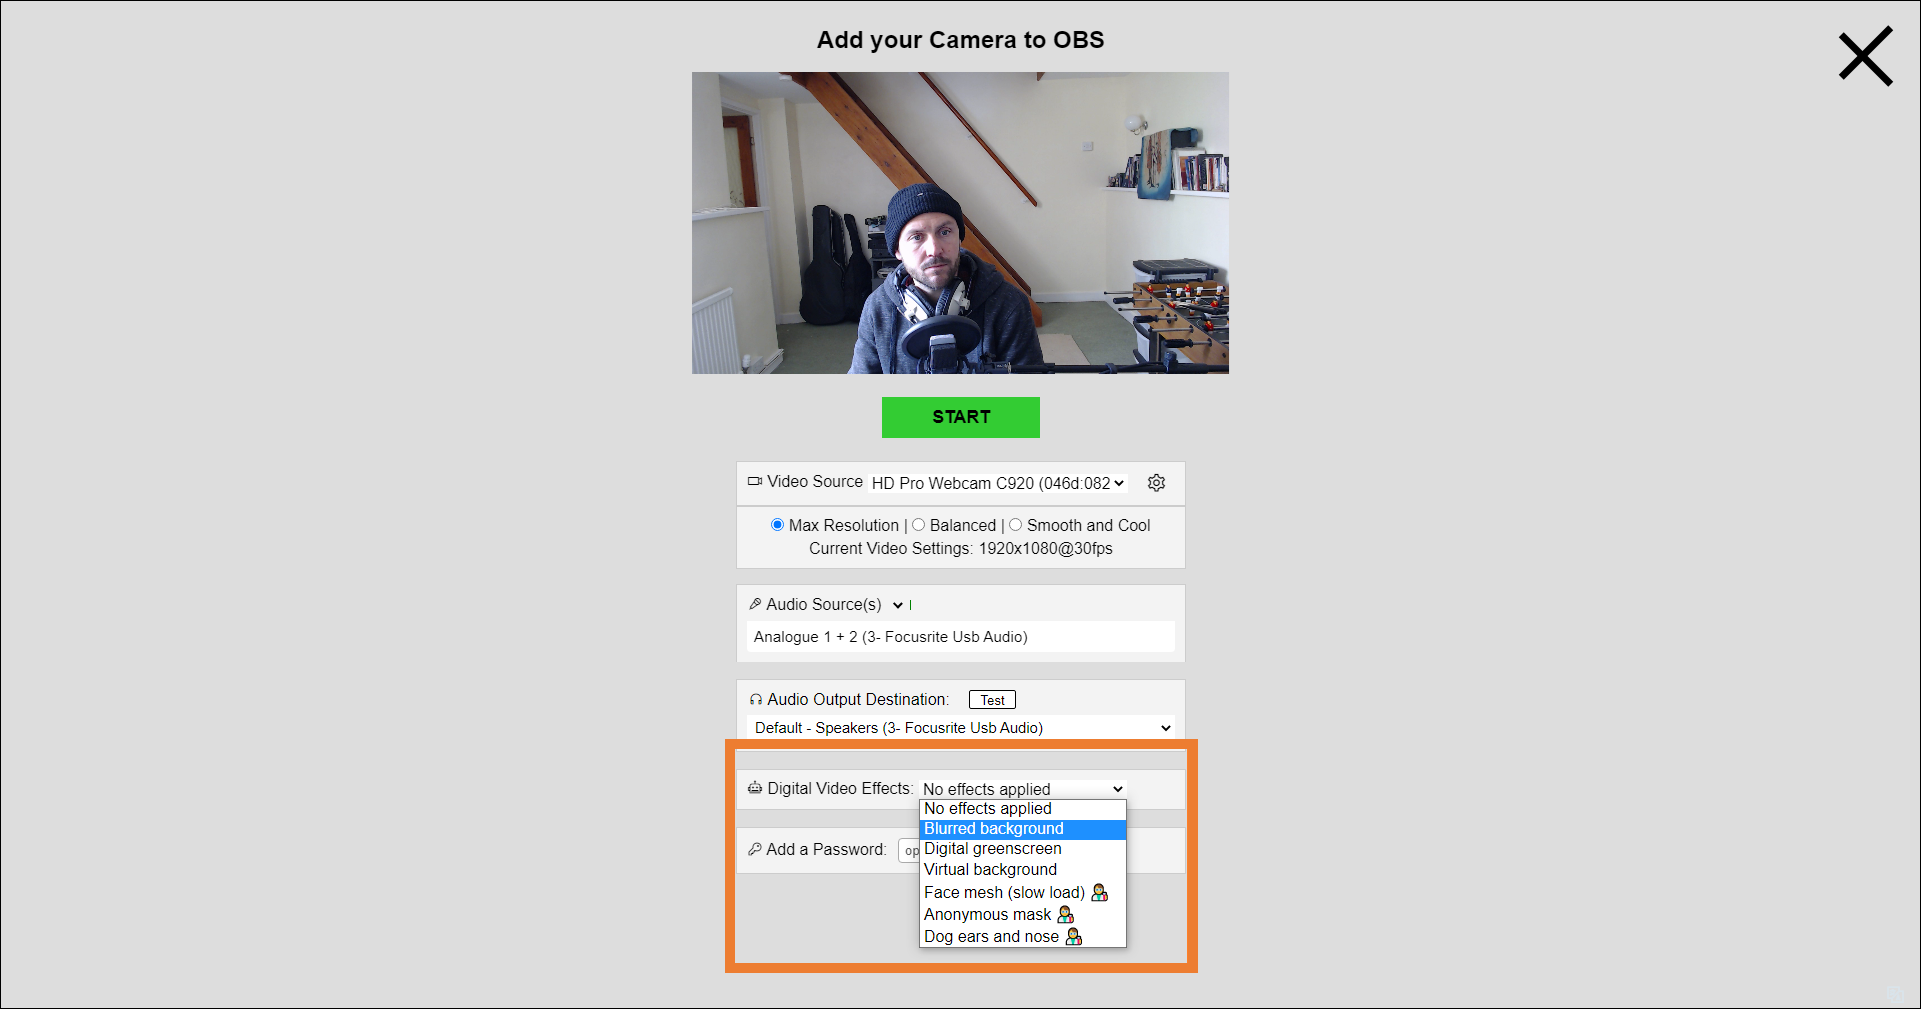 Dù bạn đang ở bất cứ đâu, Camera từ xa VDO.Ninja - Quicklink sẽ giúp bạn kết nối và thực hiện các cuộc phỏng vấn, hội nghị hoặc truyền tải nội dung cho public nhanh chóng và dễ dàng. Hãy truy cập hình ảnh liên quan để biết thêm chi tiết. 